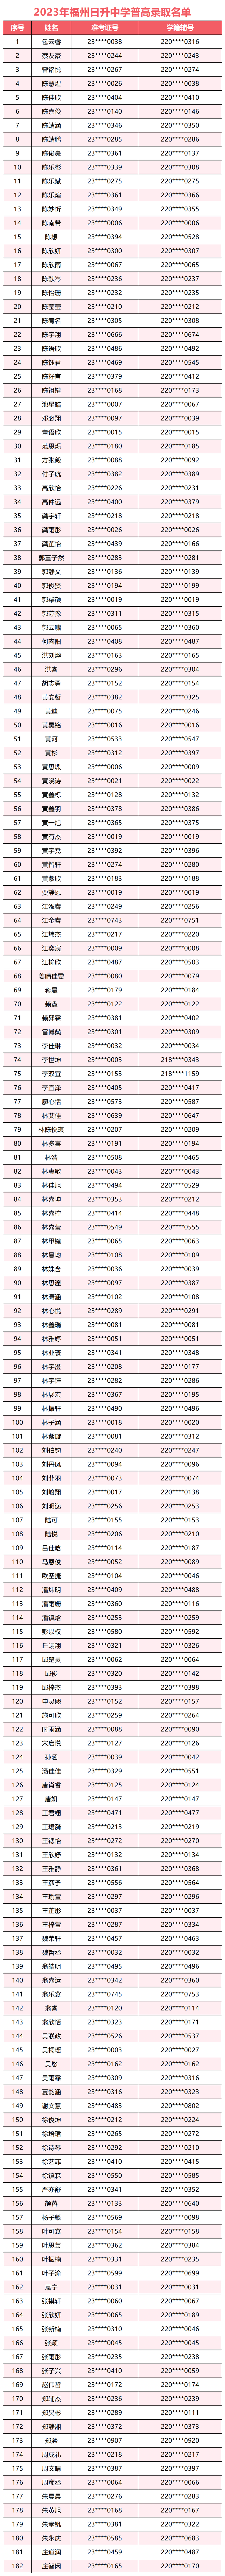 2023年福州日升中普高录取名单人_表格数据.png